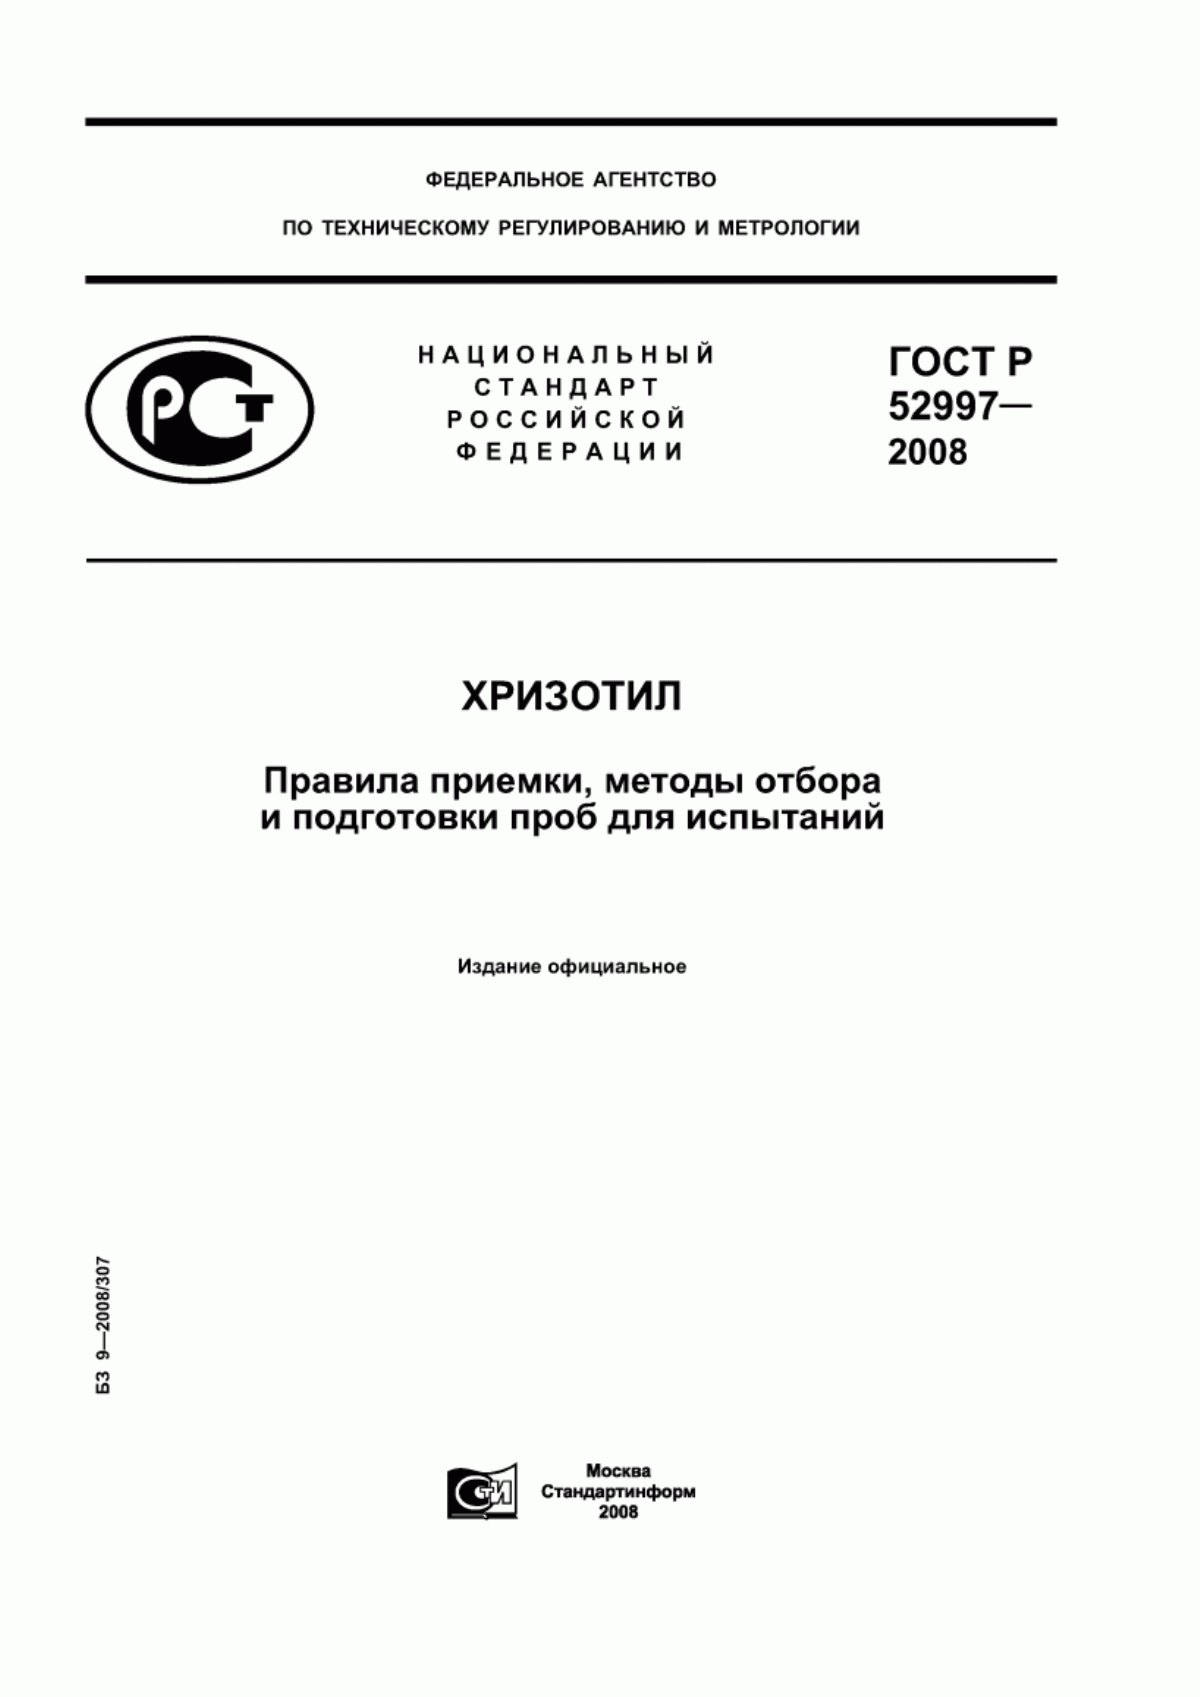 ГОСТ Р 52997-2008 Хризотил. Правила приемки, методы отбора и подготовки проб для испытаний